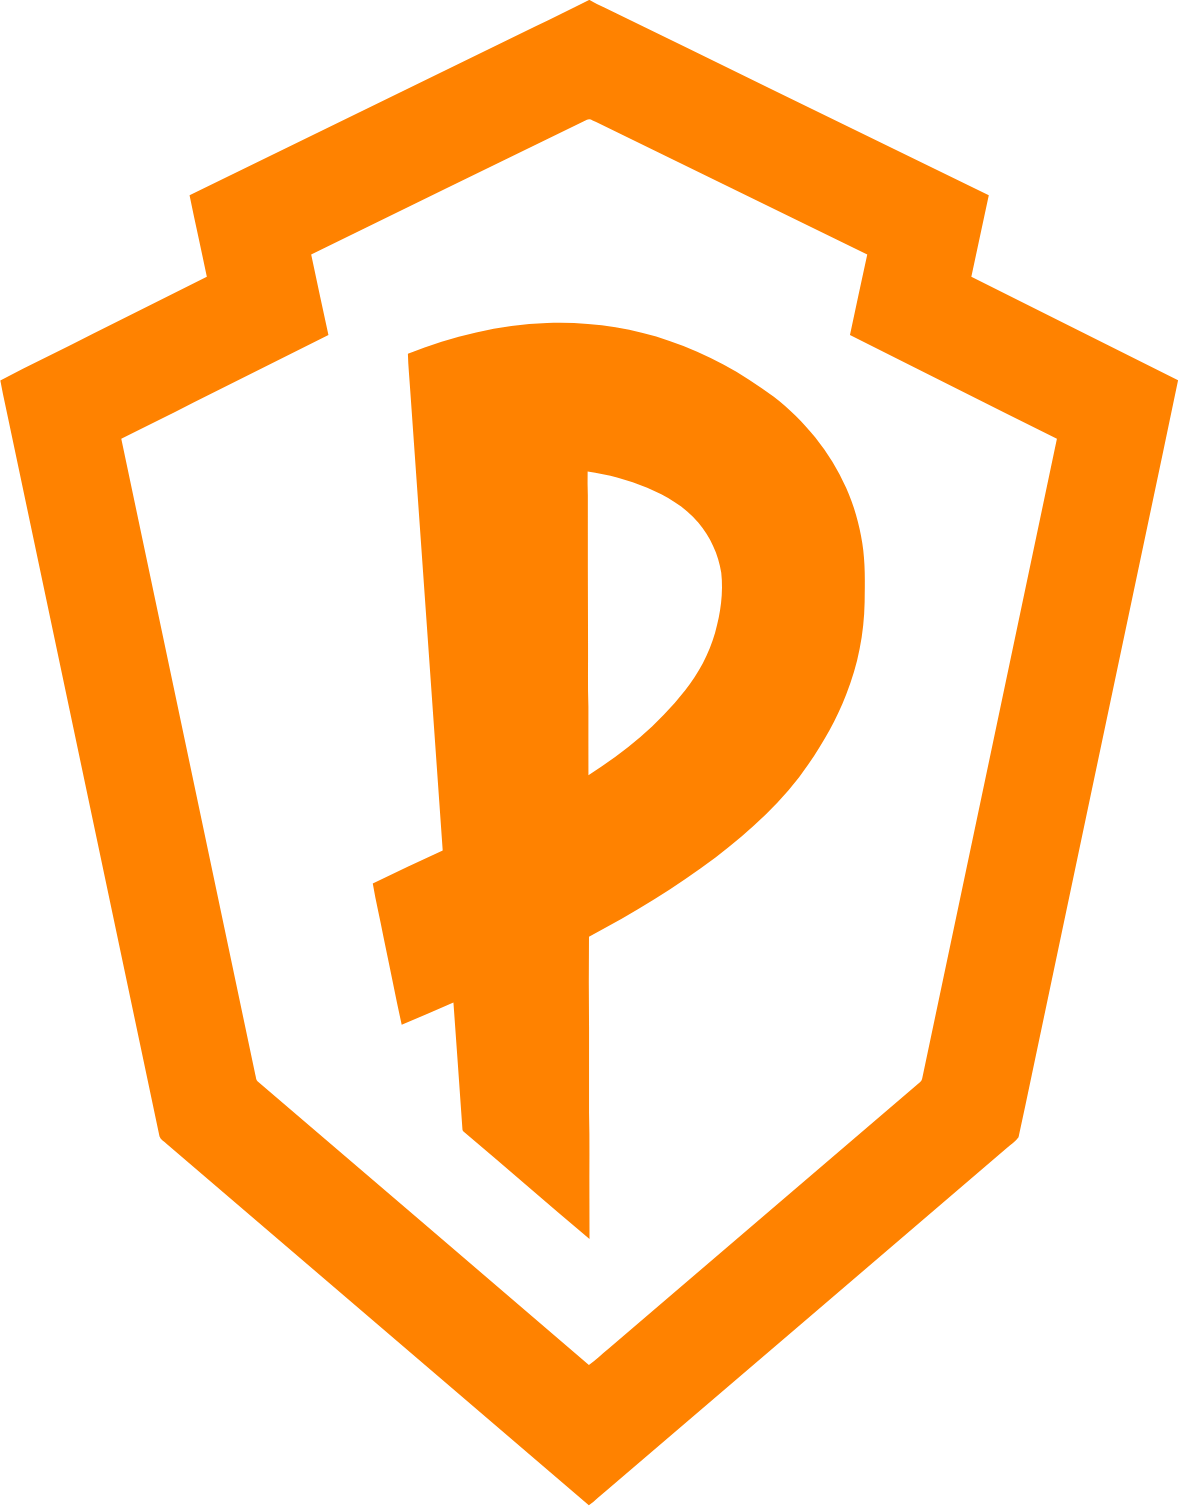 Playstudios logo (transparent PNG)